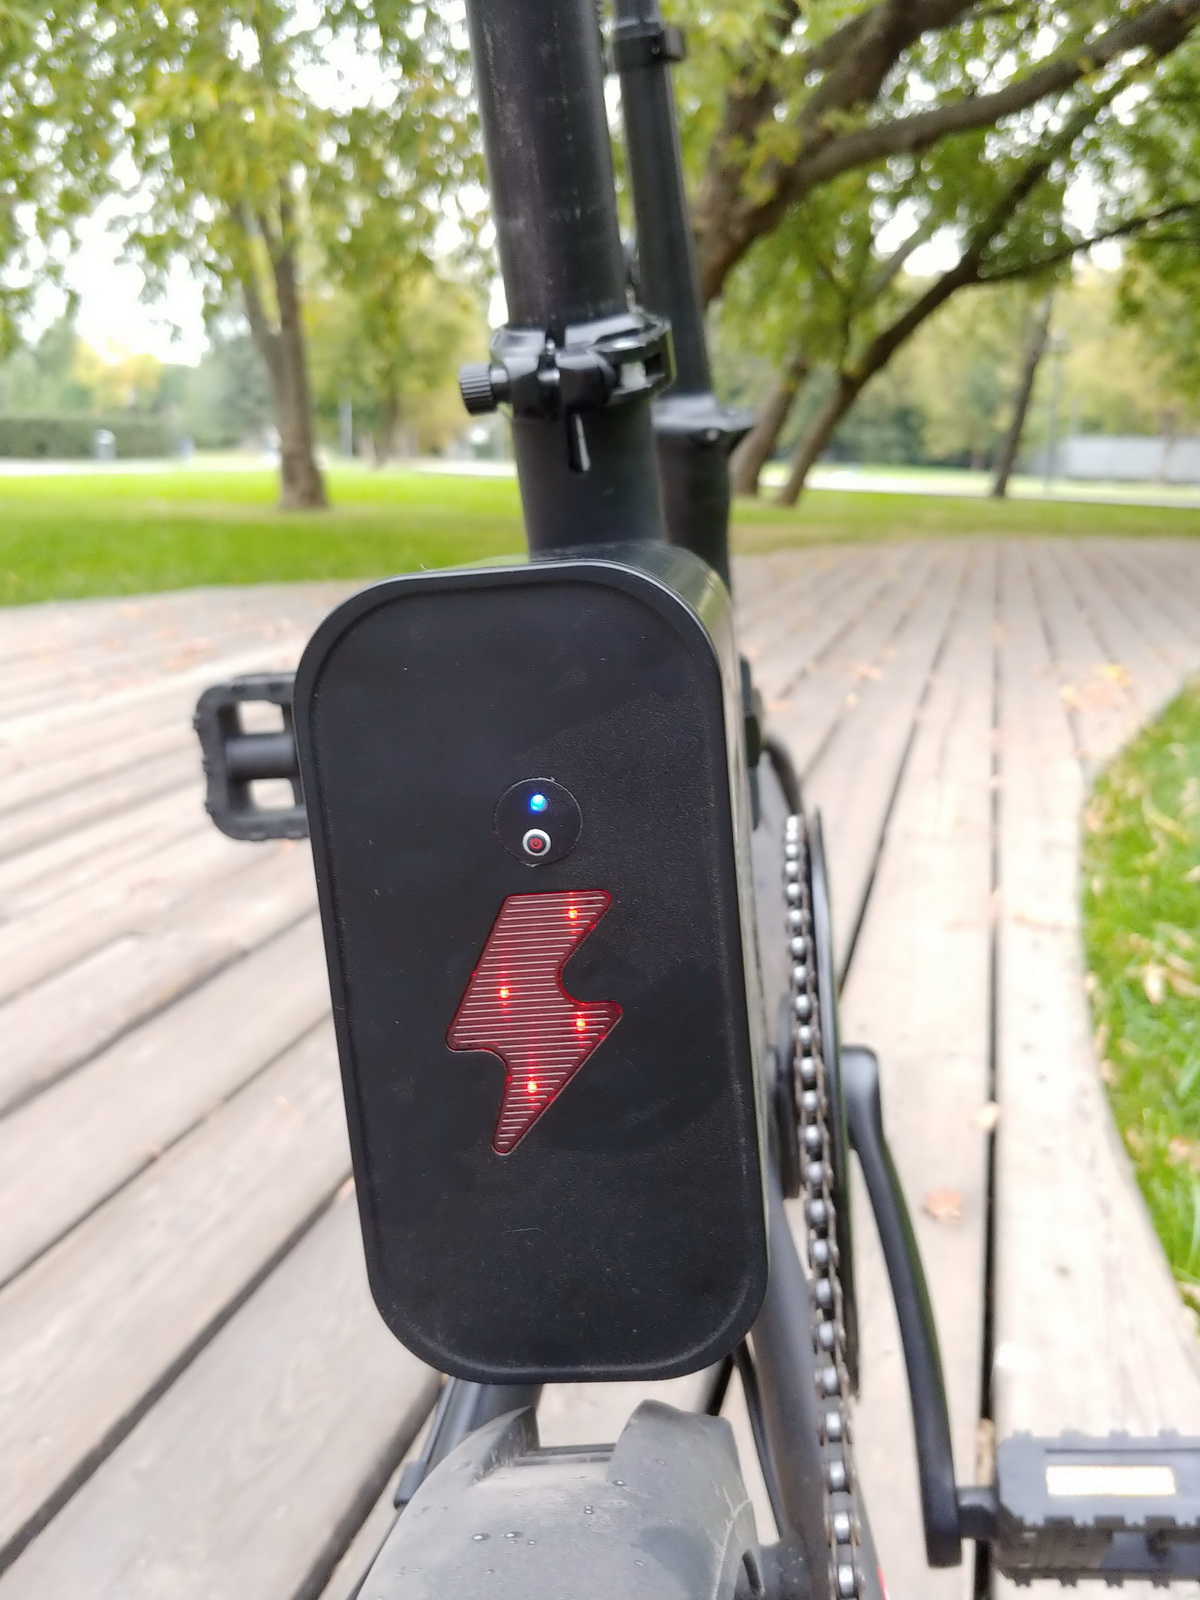 Электровелосипед, который можно бросить в багажник. Обзор iconBIT K7